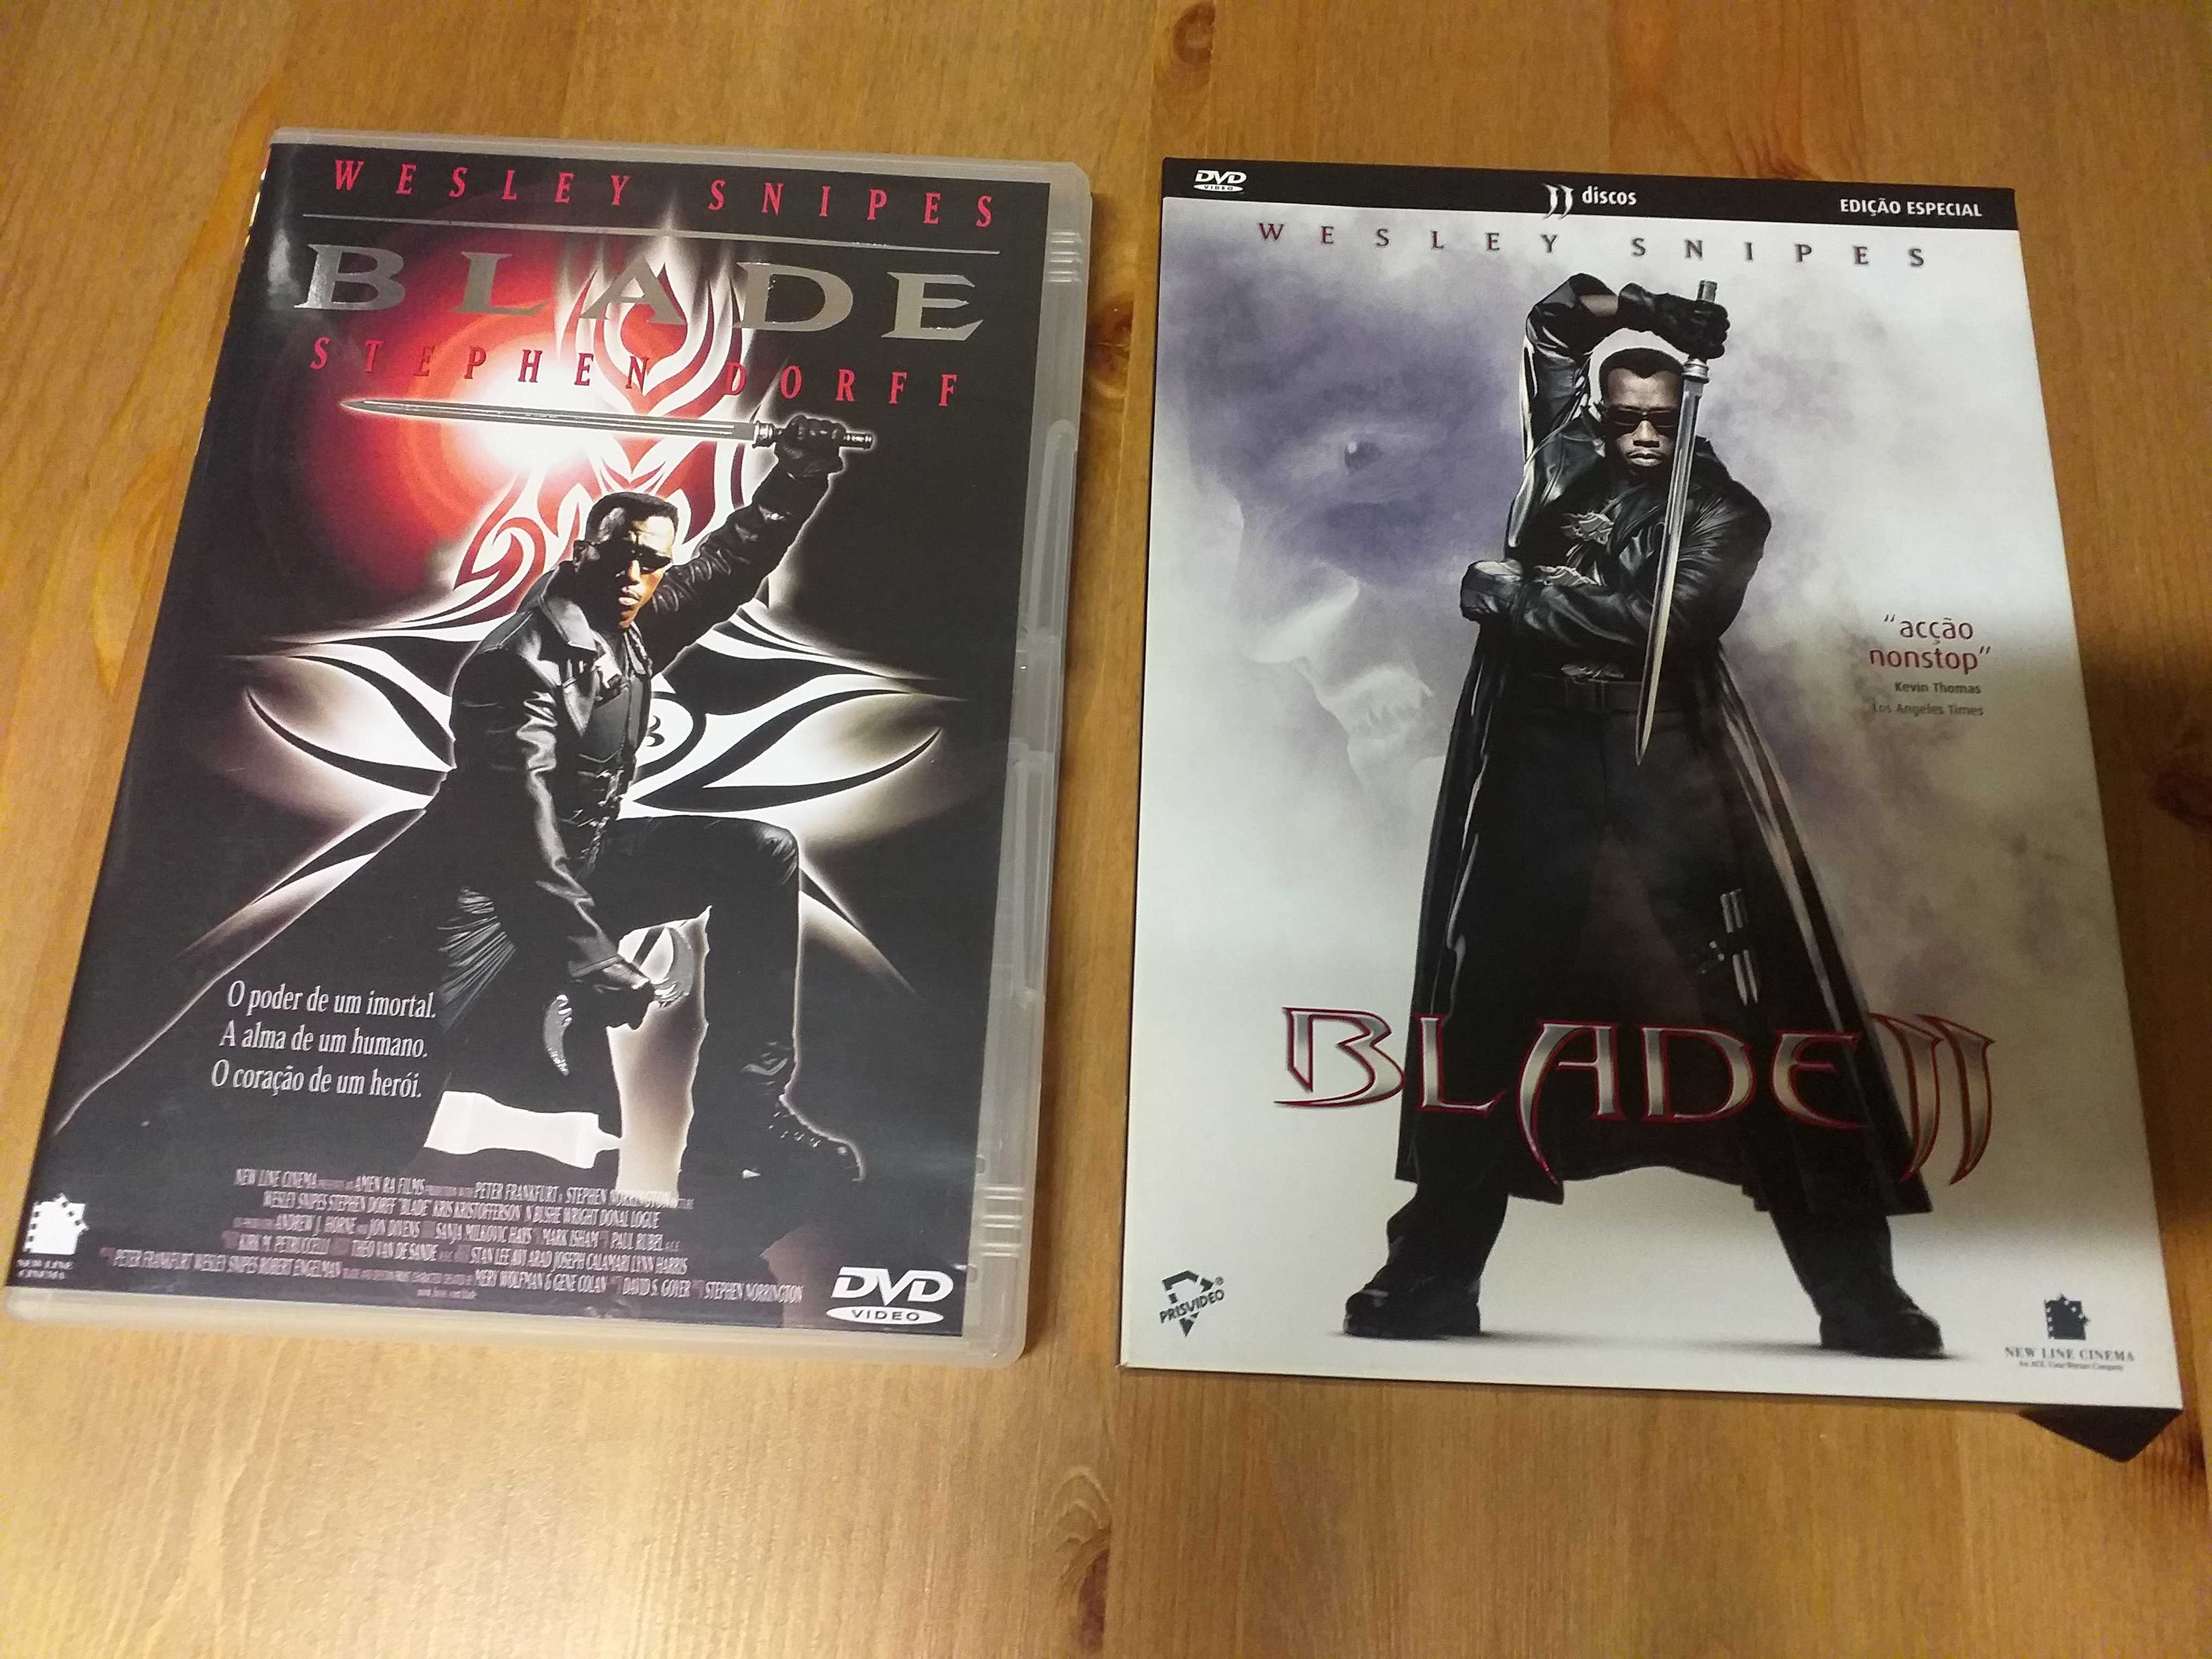 Blade I e II,edição especial,NOVOS,,W Snipes,desconto na compra dos 2